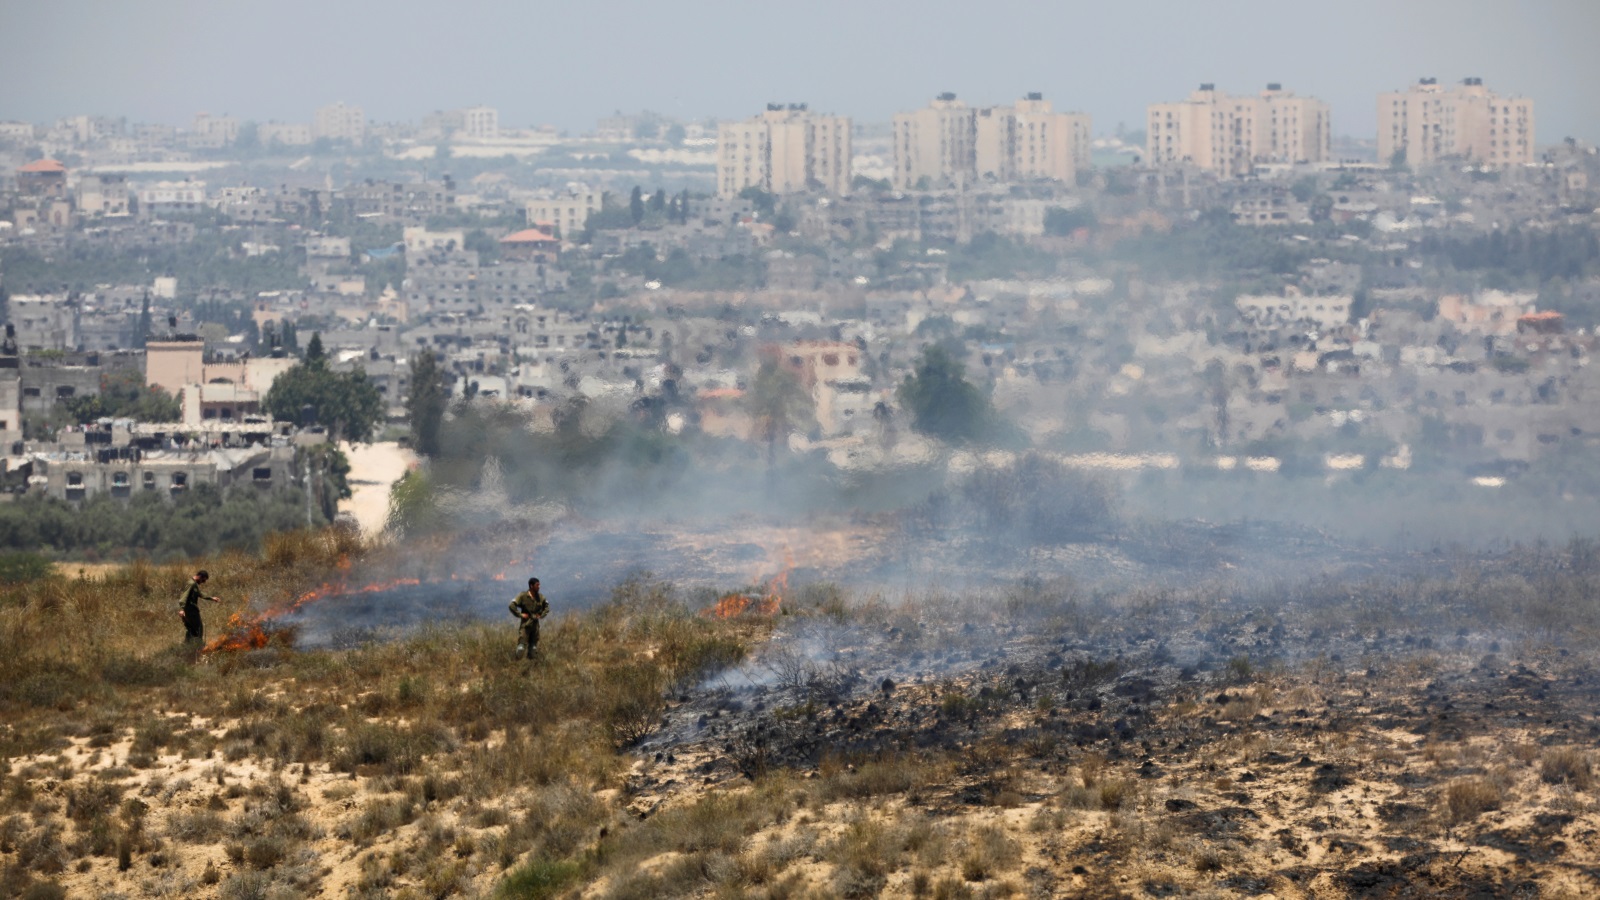 حرائق واسعة بأراضي المستوطنات قرب غزة بفعل الطائرات الورقية الحارقة التي يطلقها الفلسطينيون 